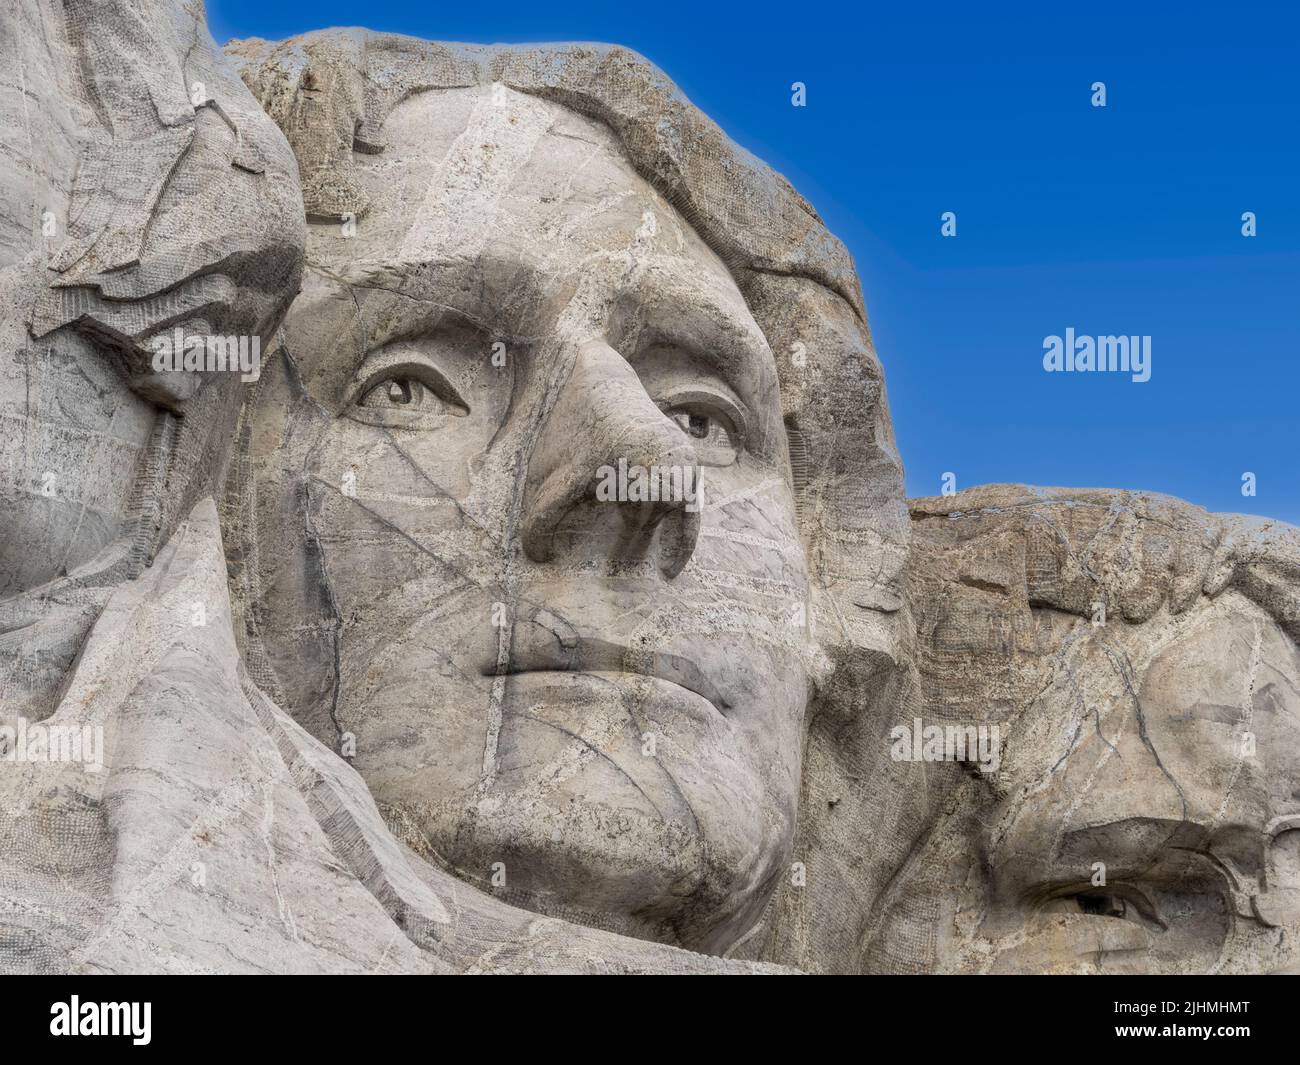 Nahaufnahme der Skulptur von Thomas Jefferson am Mount Rushmore National Memorial in den Black Hills von South Dakota, USA Stockfoto